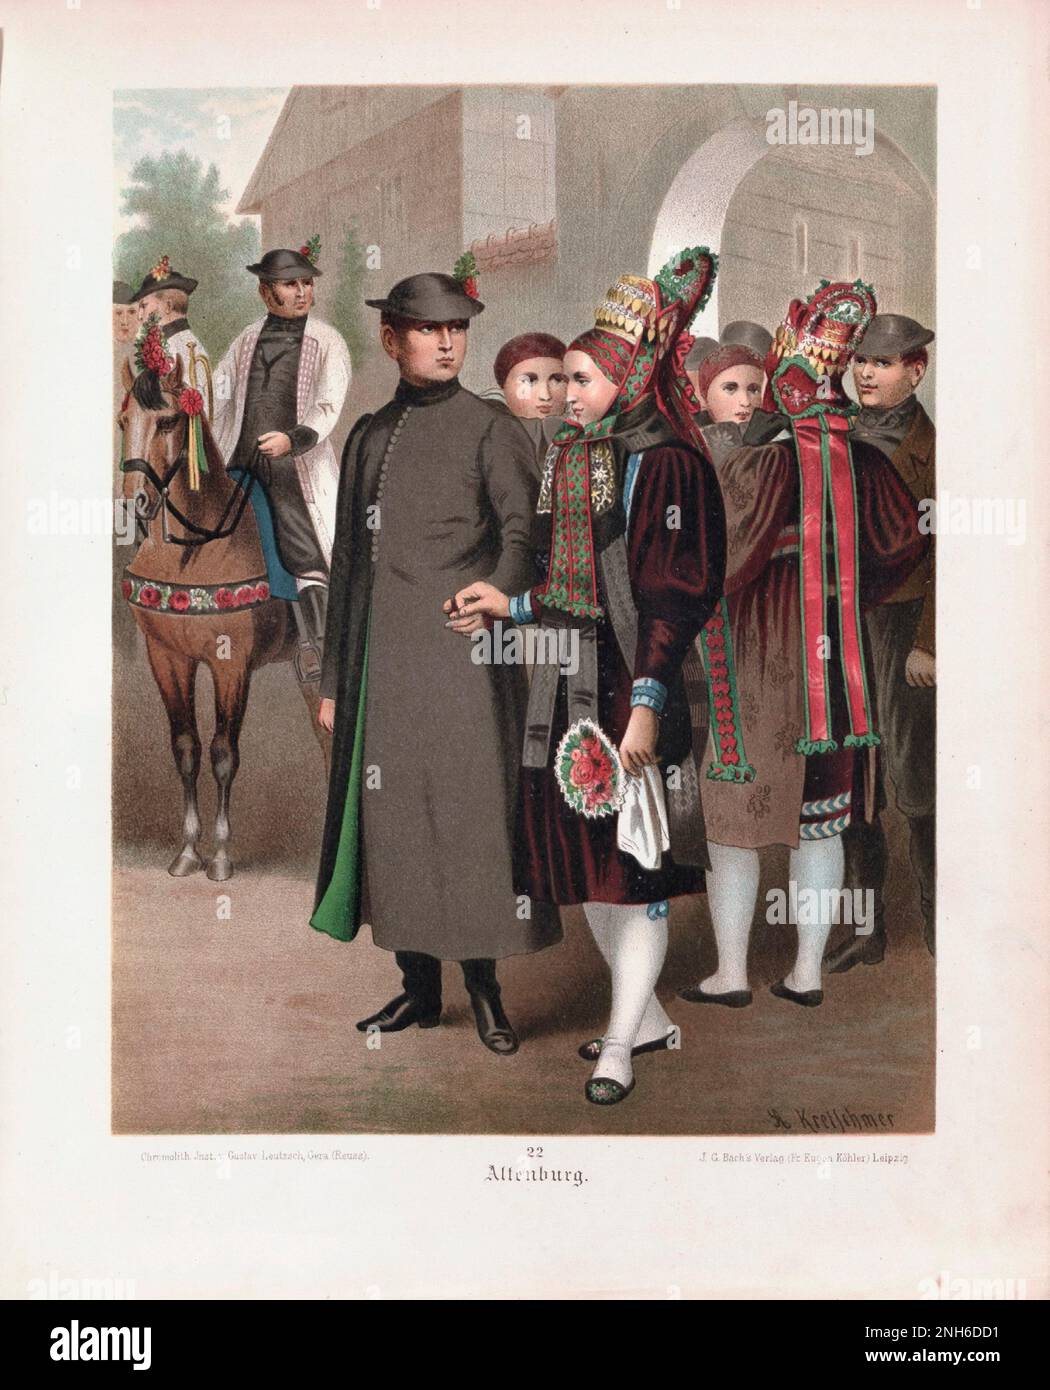 Disfraz folclórico alemán. Altenburg. litografía del siglo 19th. Foto de stock